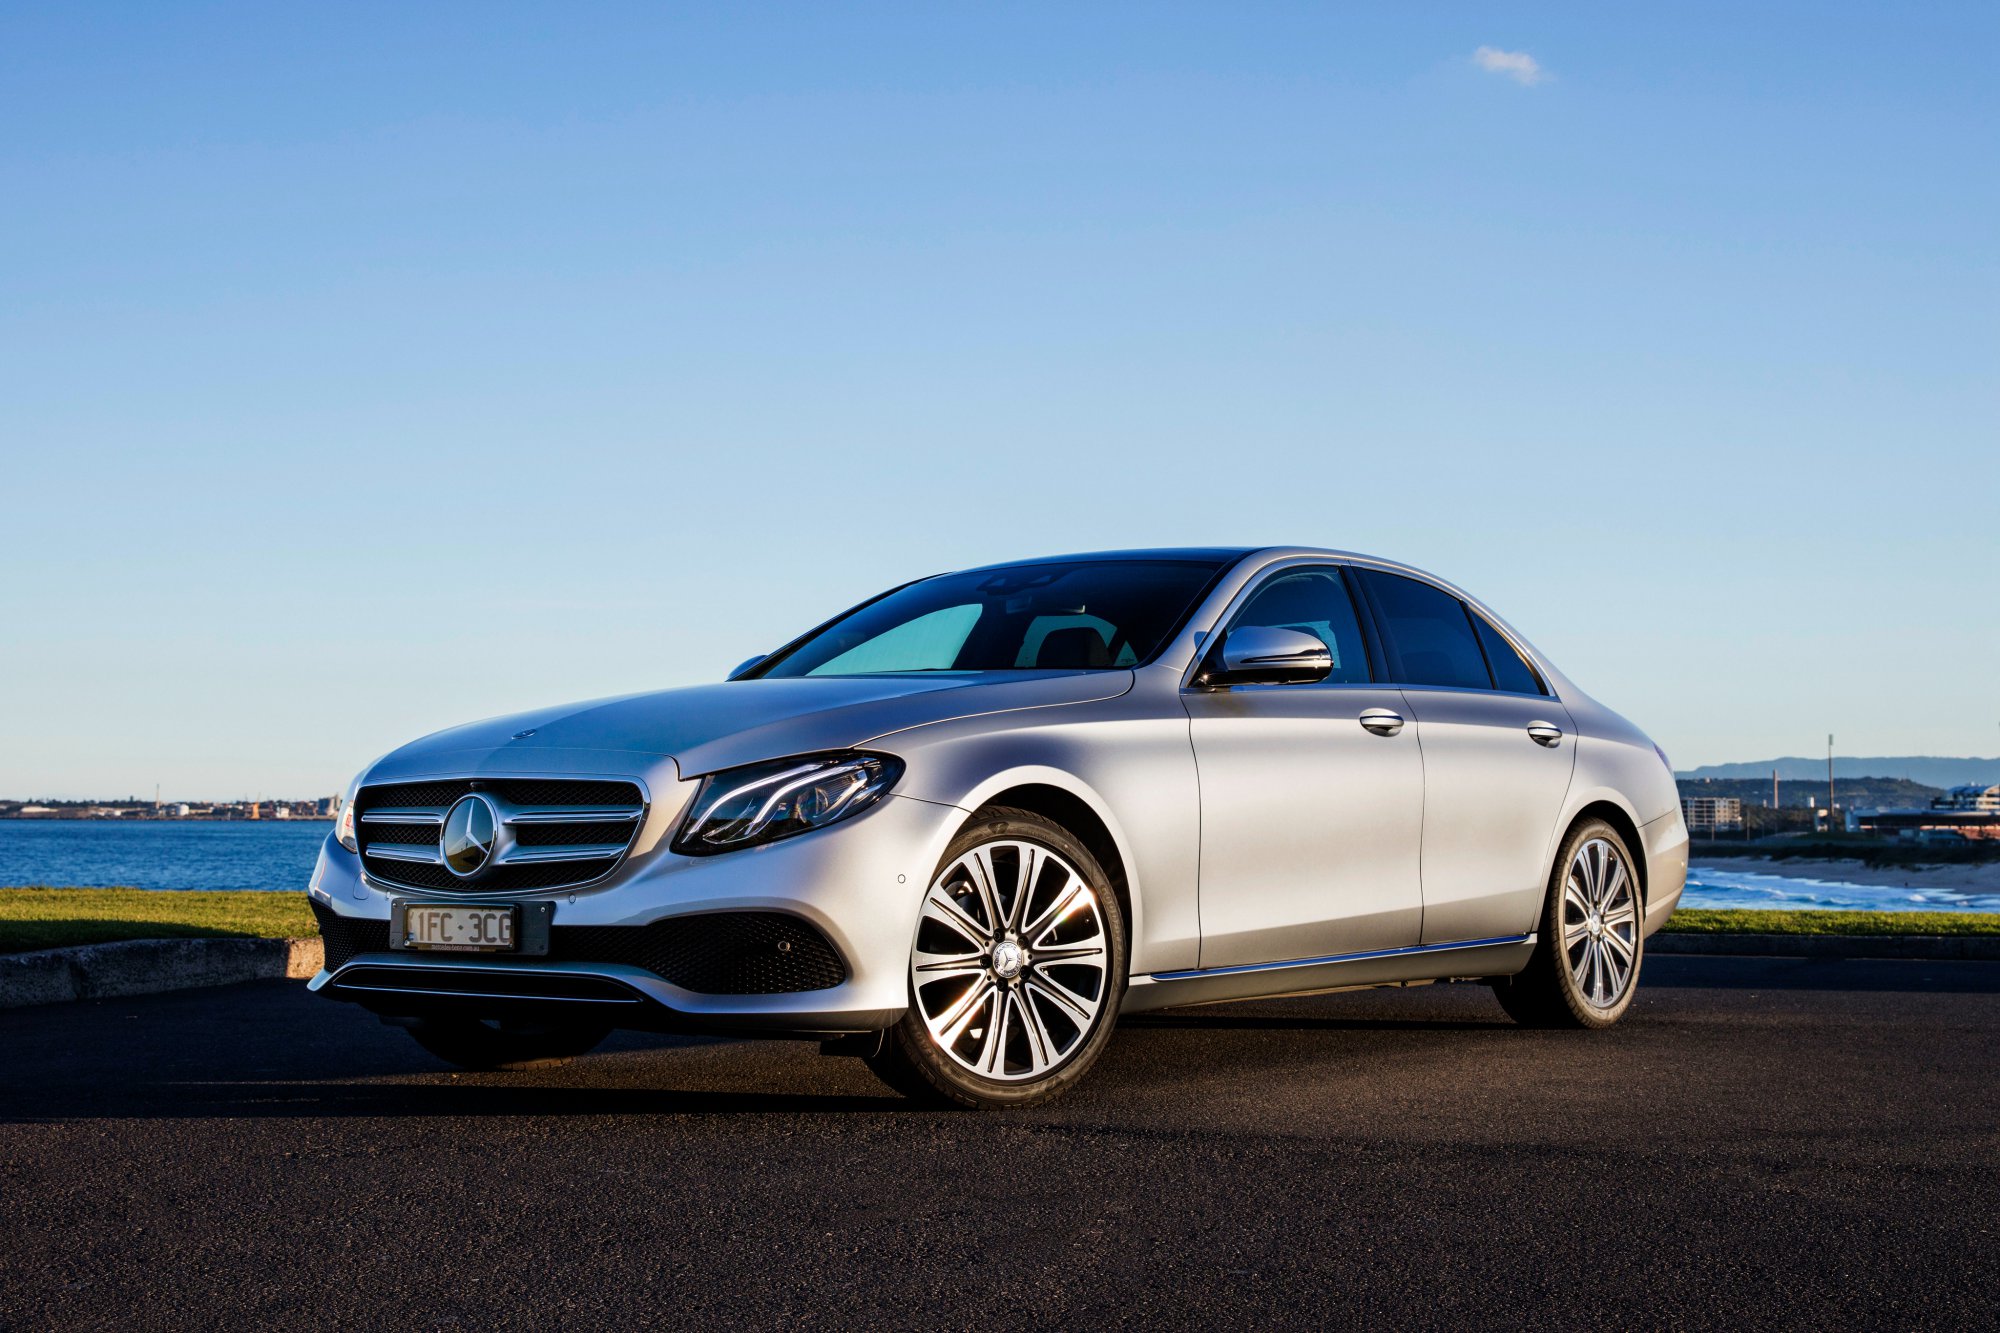 Review - 2016 Mercedes-Benz E-Class - Review | CarShowroom.com.au